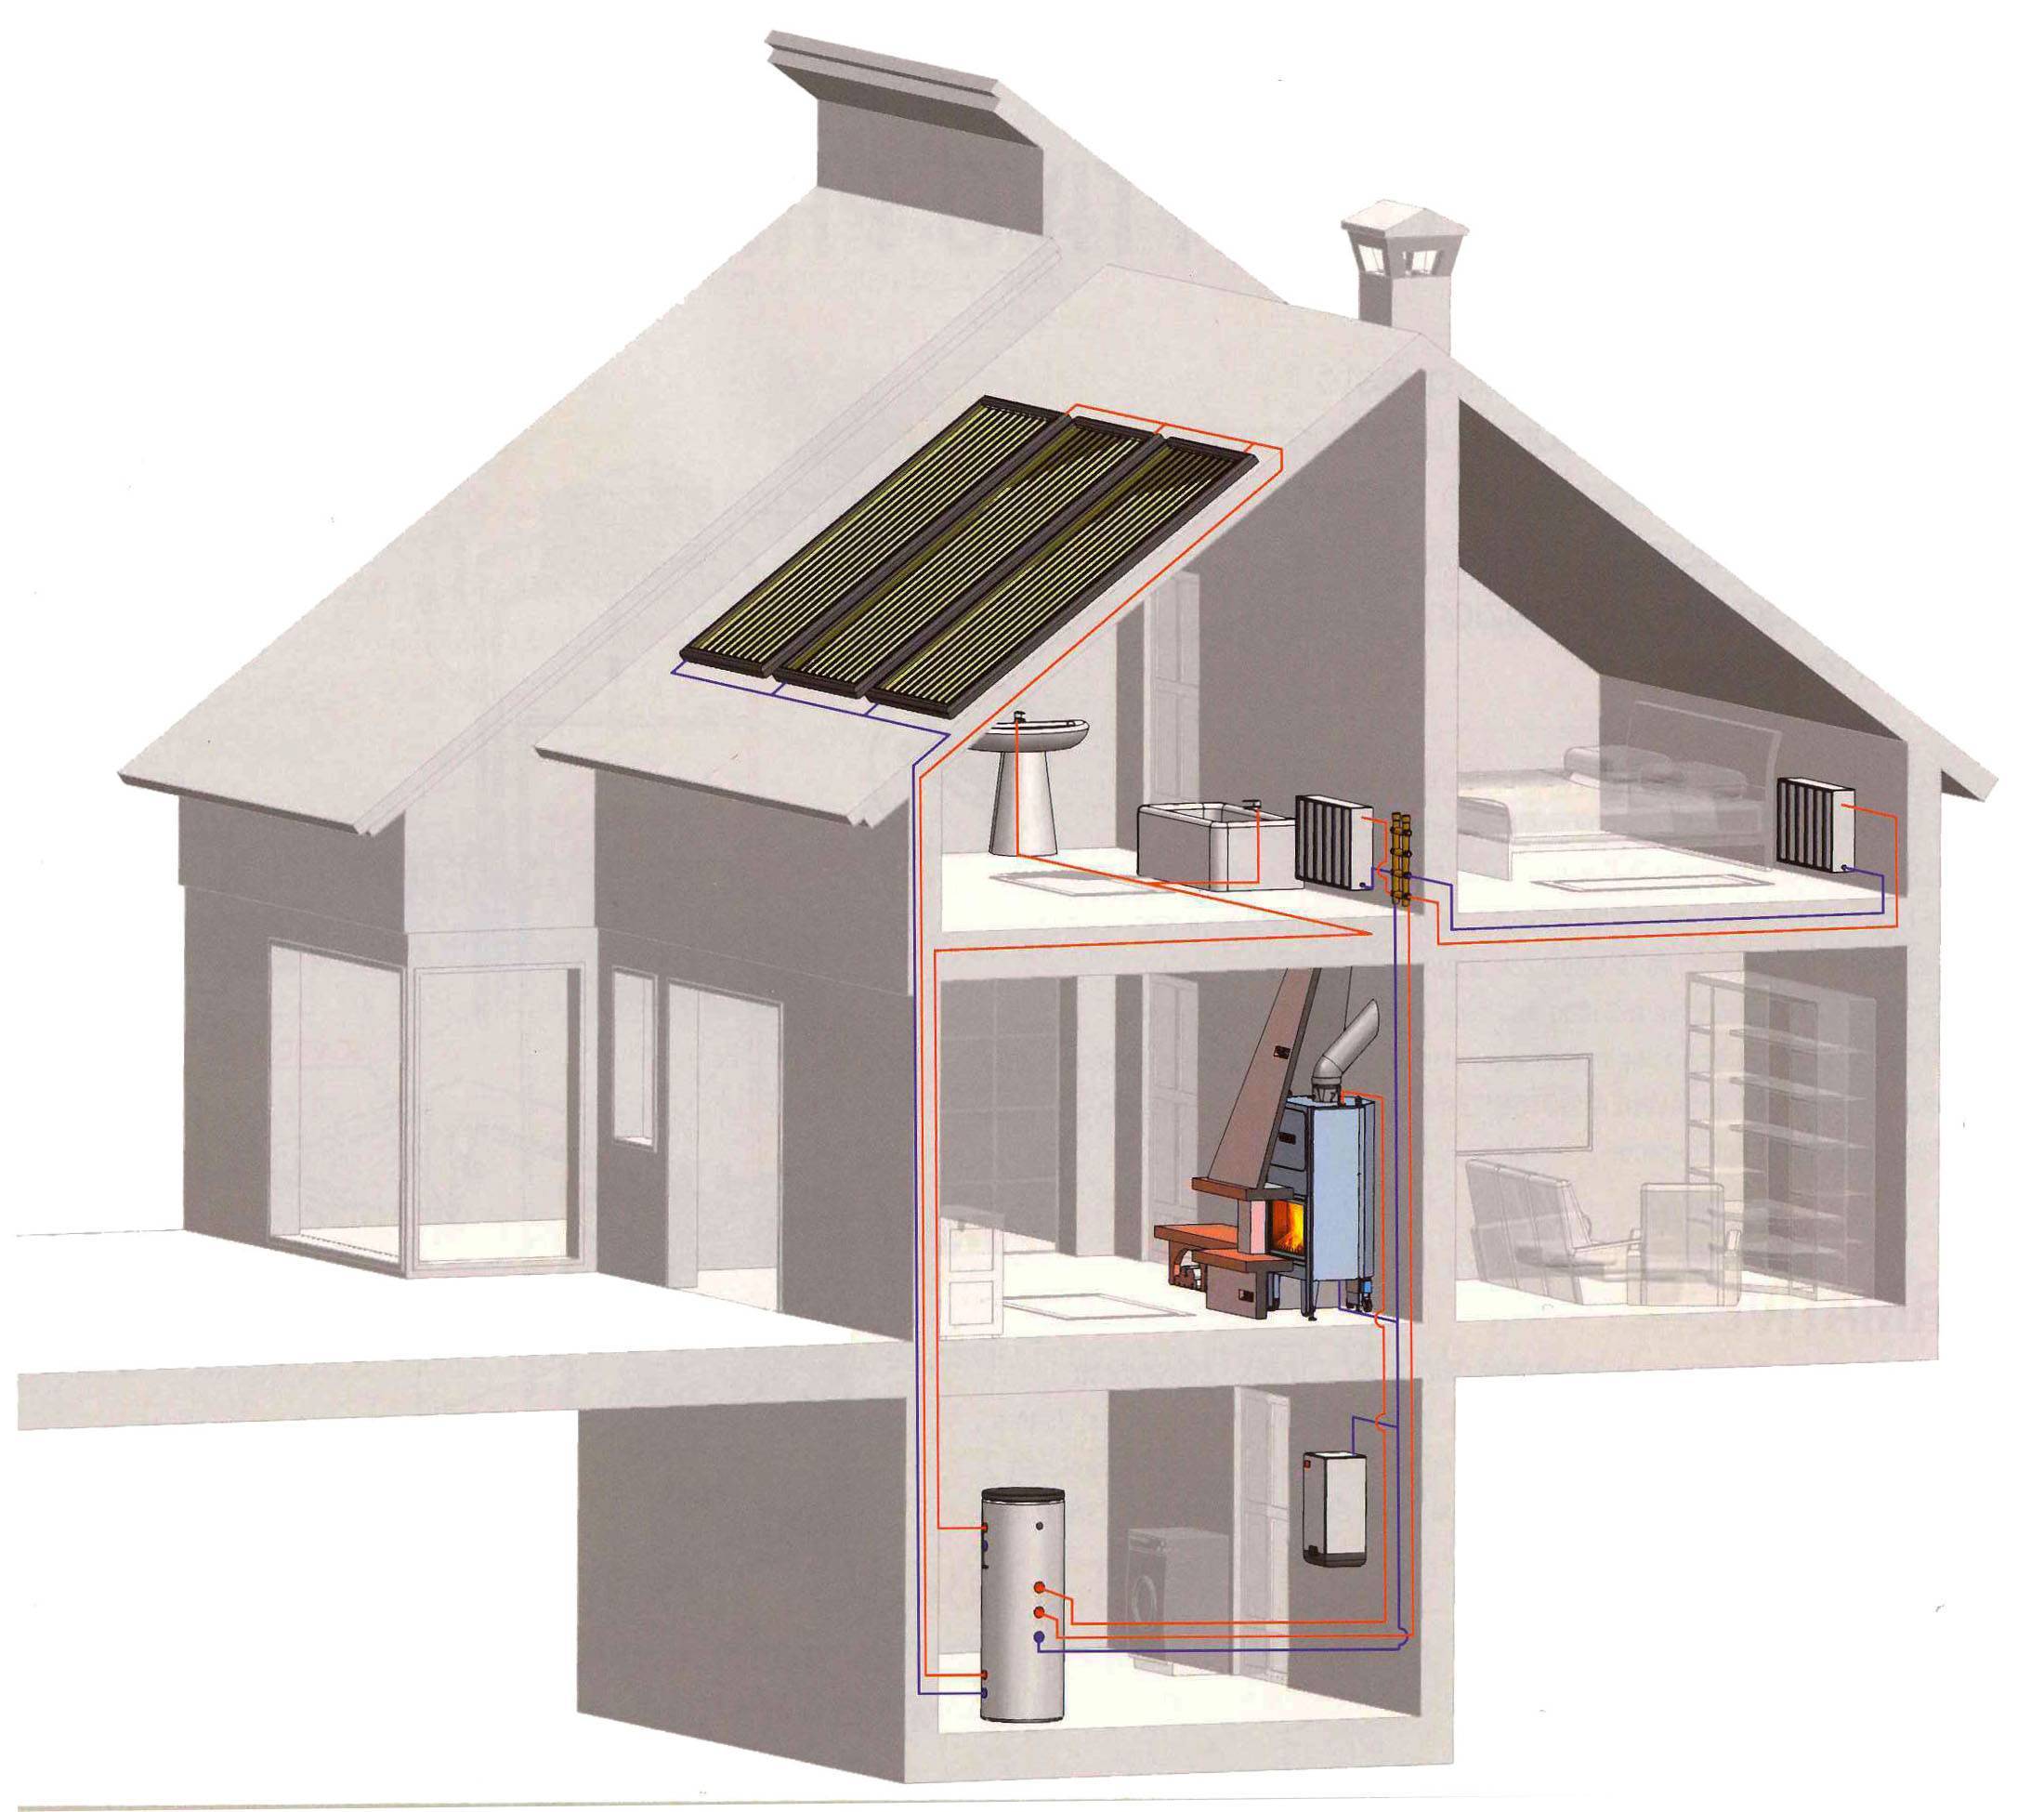 Воздушное отопление своими руками на примере небольшого дачного дома